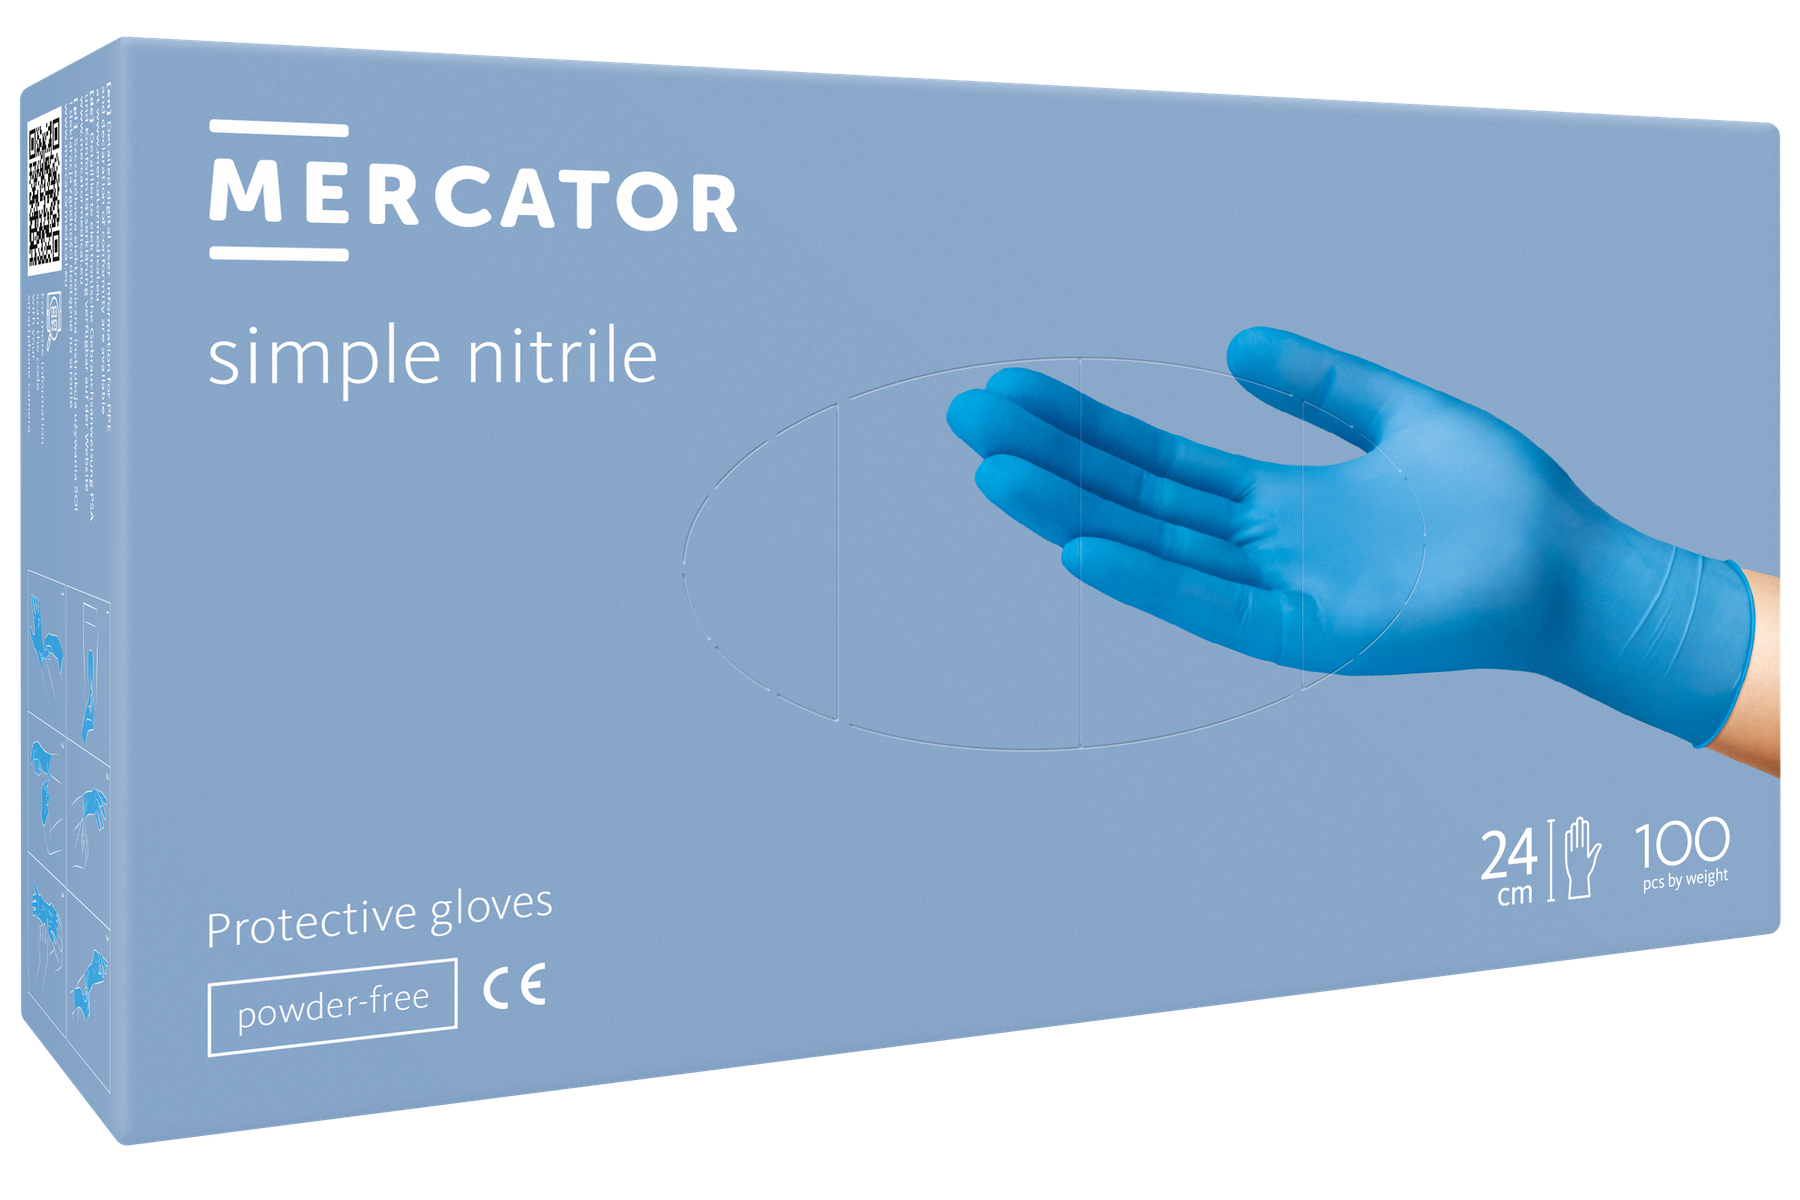 Mercator GoGrip noir XL gants nitrile non poudrés texturés - 50pcs